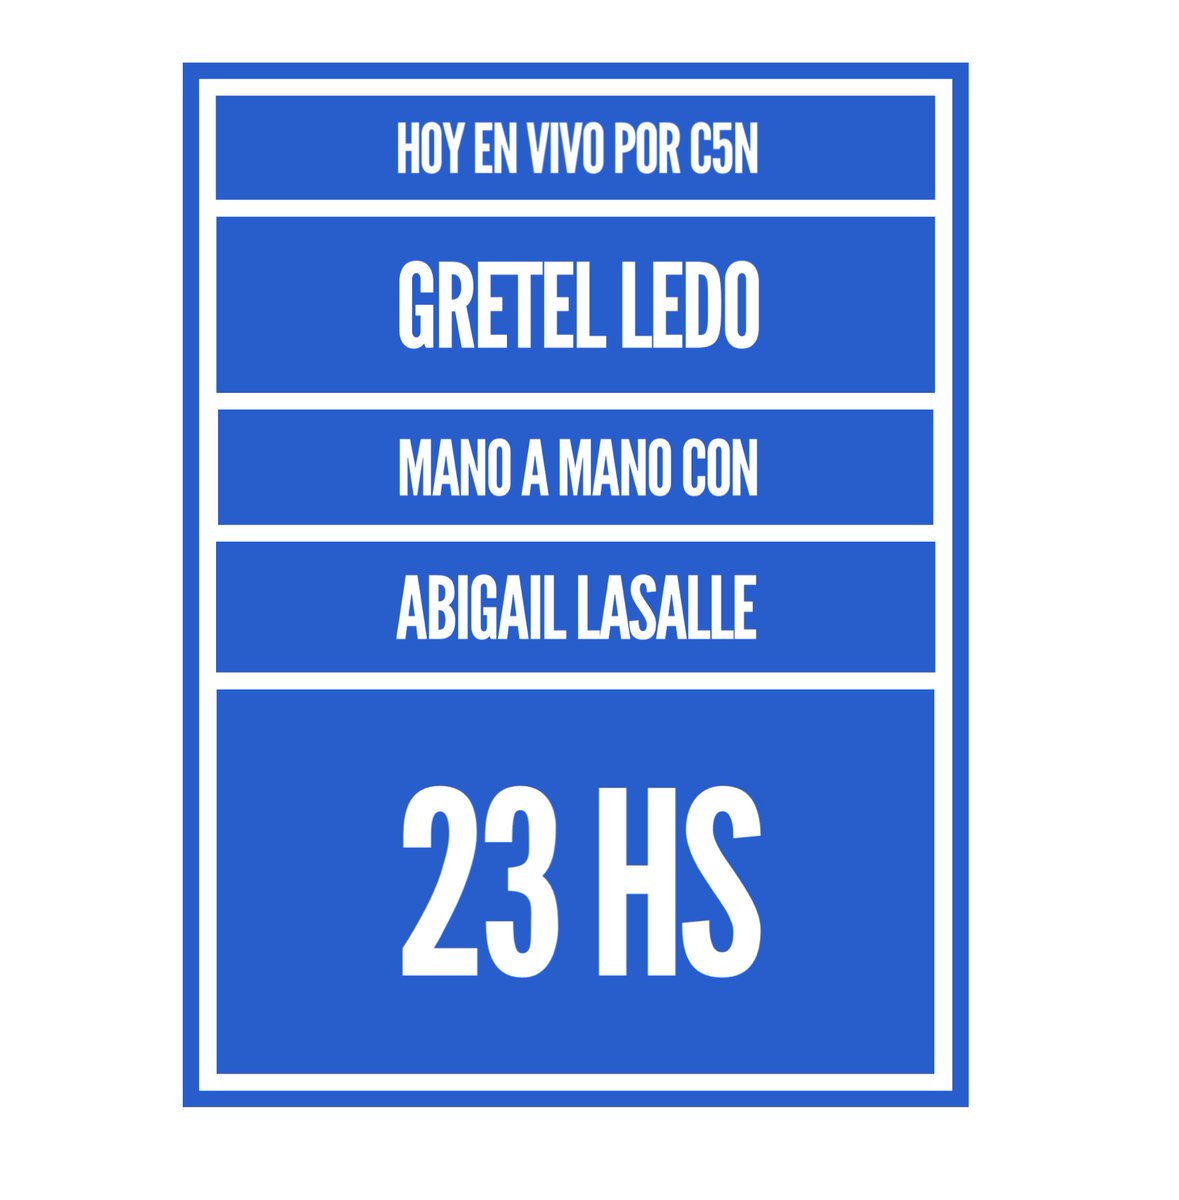 HOY en #EnVivo 23 hs por @C5N con @Abilassalle #Elecciones2018 Cierre de listas
#GretelLedo